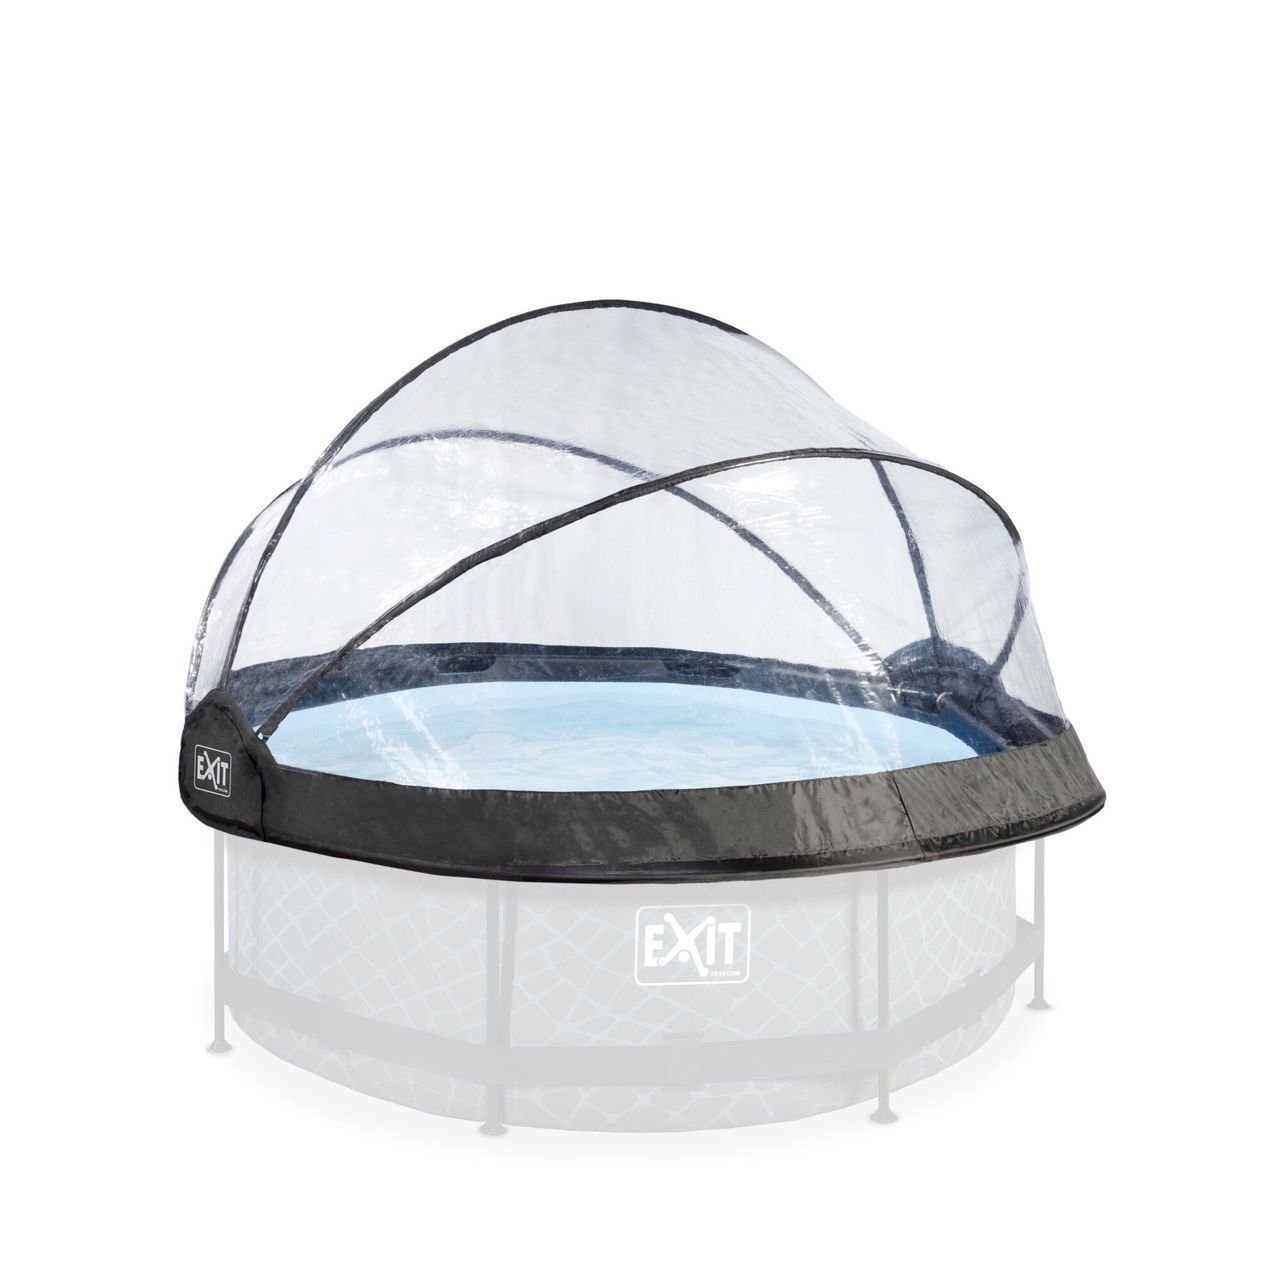 EXIT Dome-Abdeckung für Frame-Pool Dome_Abdeckung_M